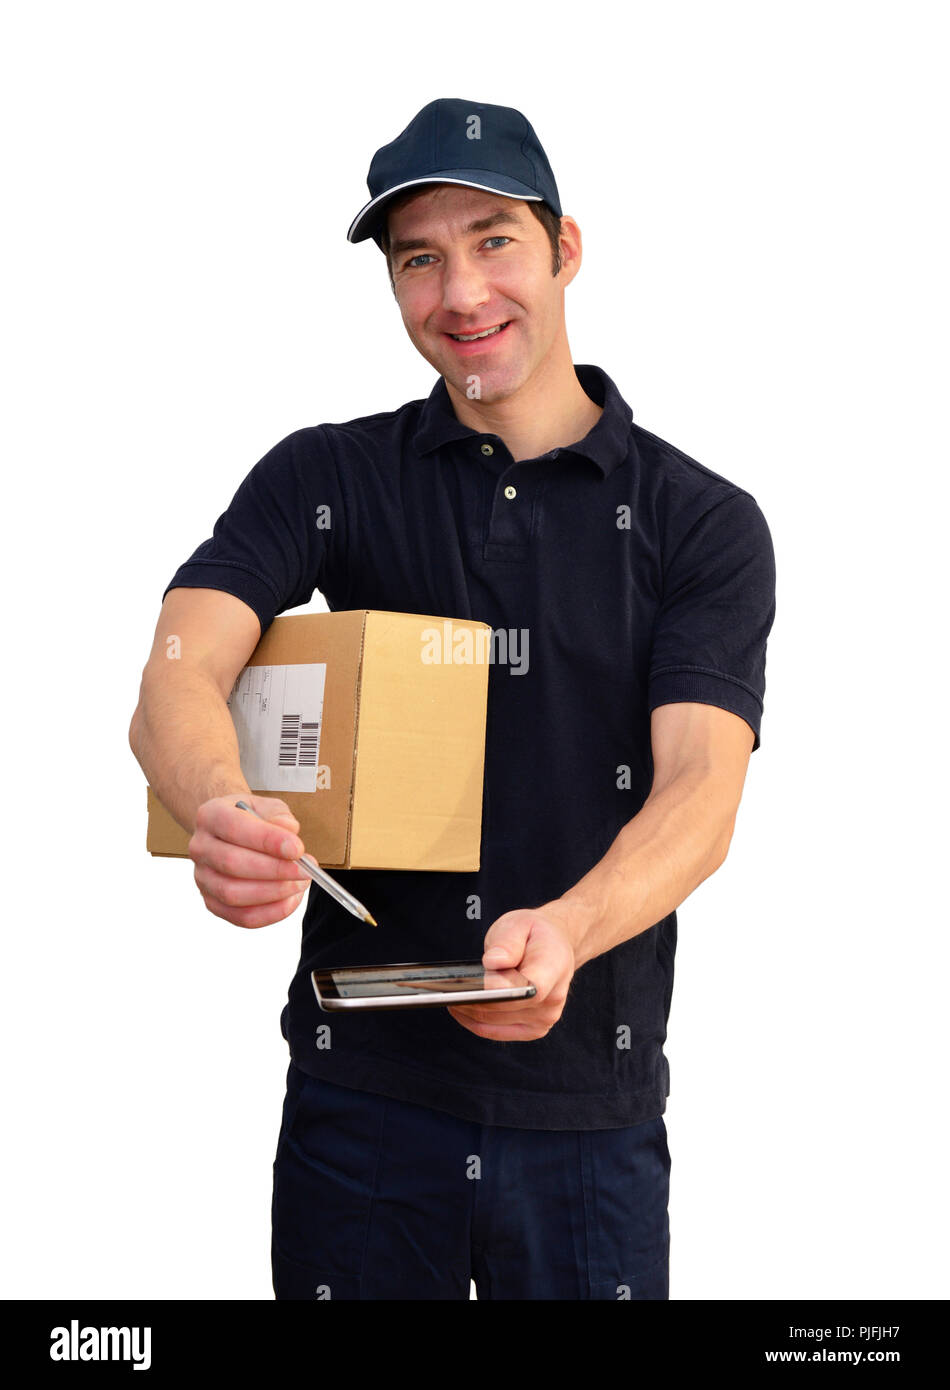 Lieferservice - paketdienst Für Pakete und Sendungen liefern - auf weißem Hintergrund Stockfoto